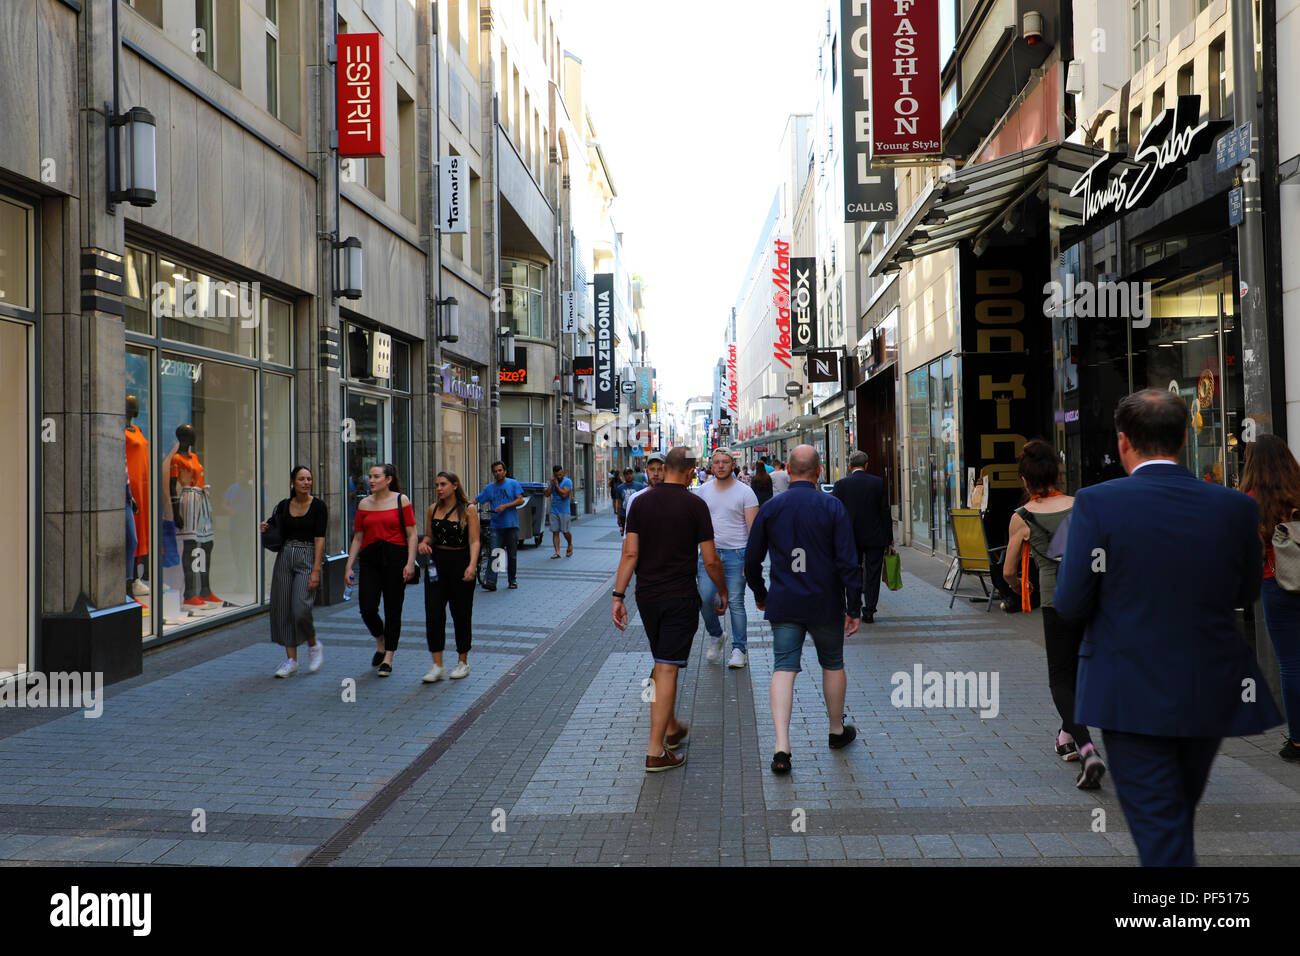 Colonia, Germania - 31 Maggio 2018: strada dello shopping Hohe Strasse con persone a piedi. Hohe Strasse e Schilder Gasse sono via dello shopping nella città vecchia Foto Stock